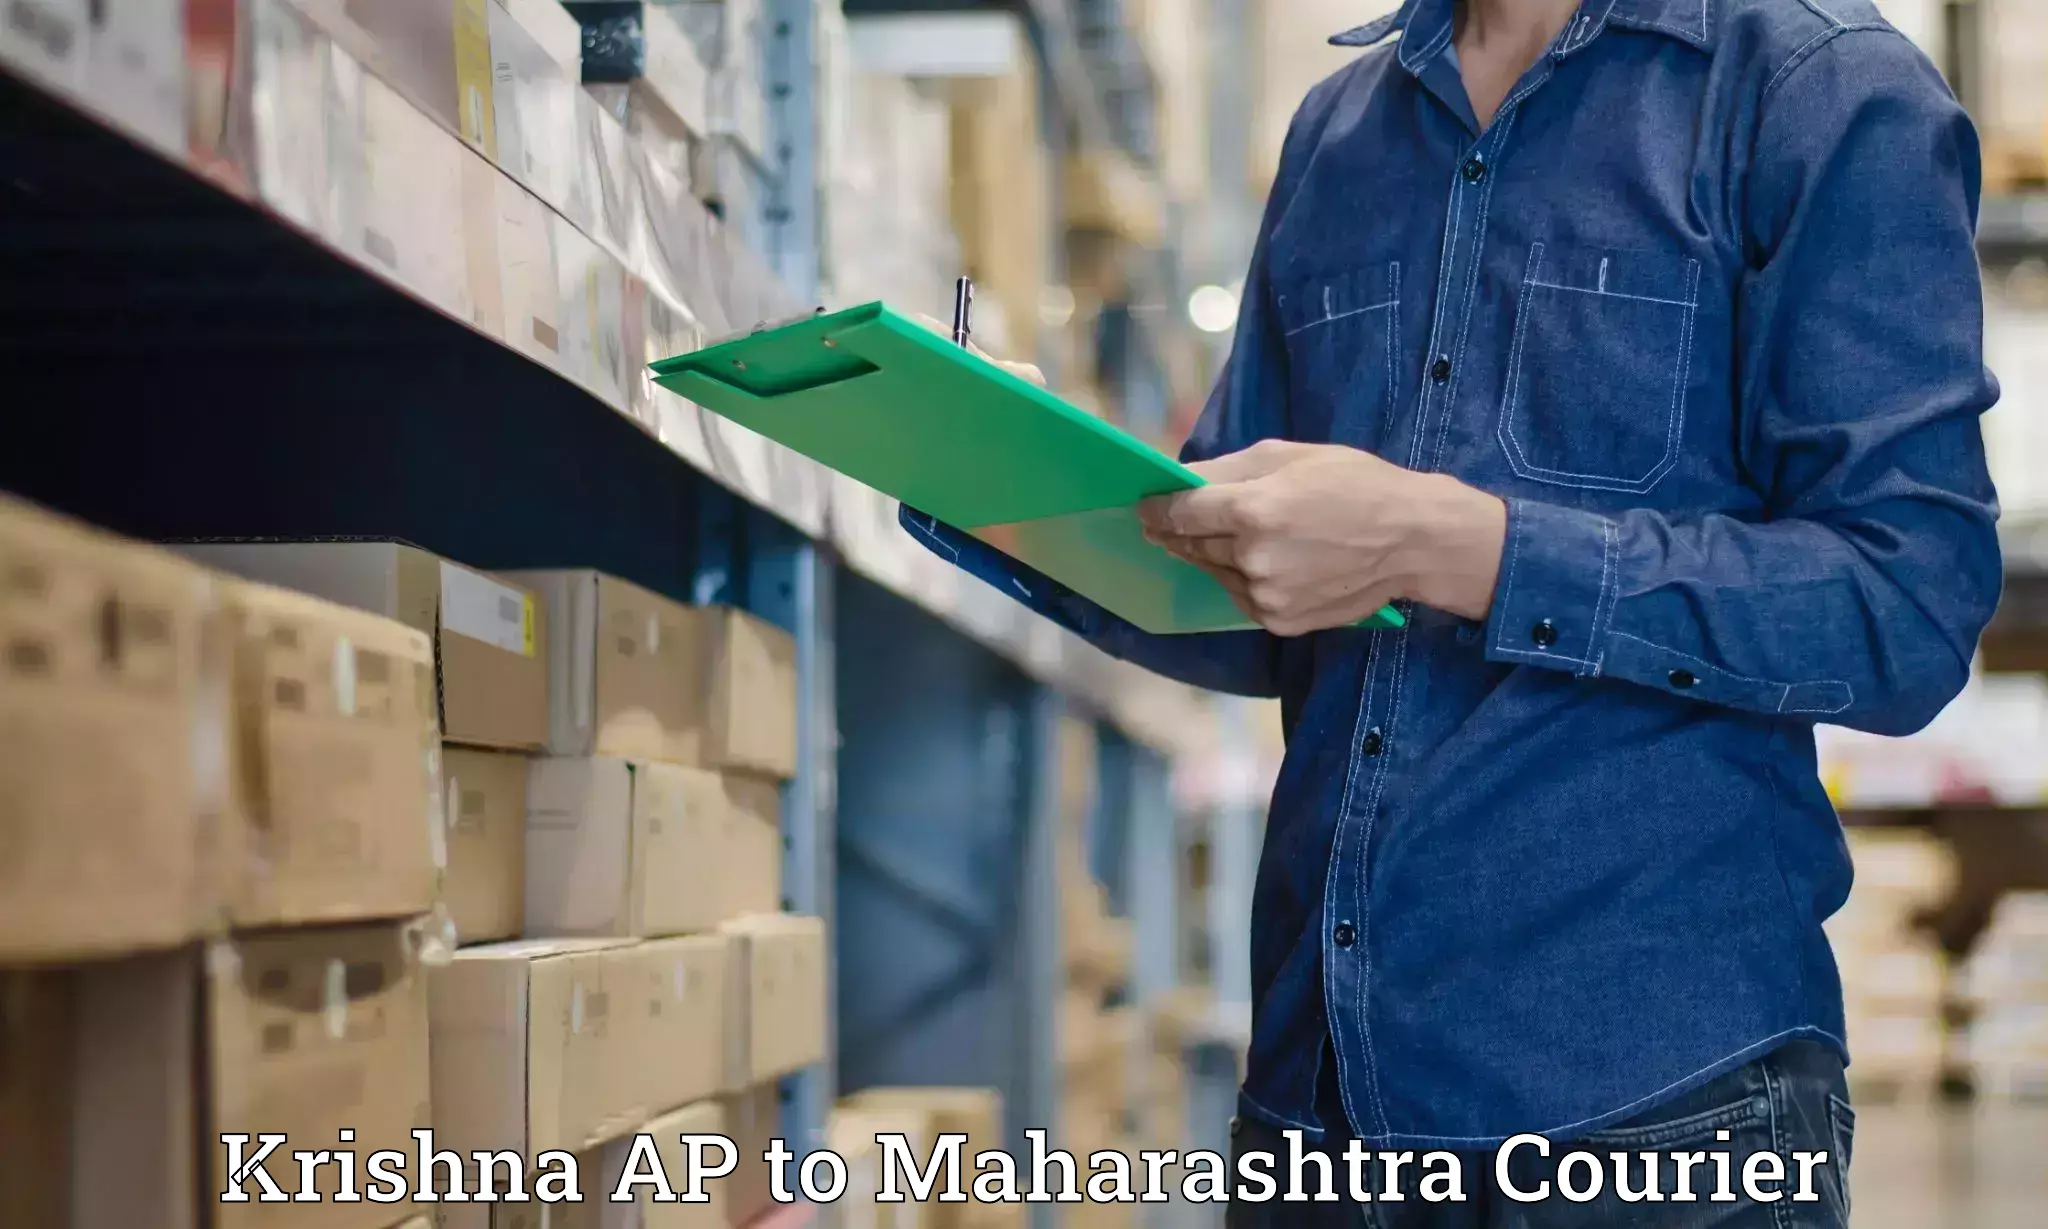 Door-to-door freight service Krishna AP to Shirdi